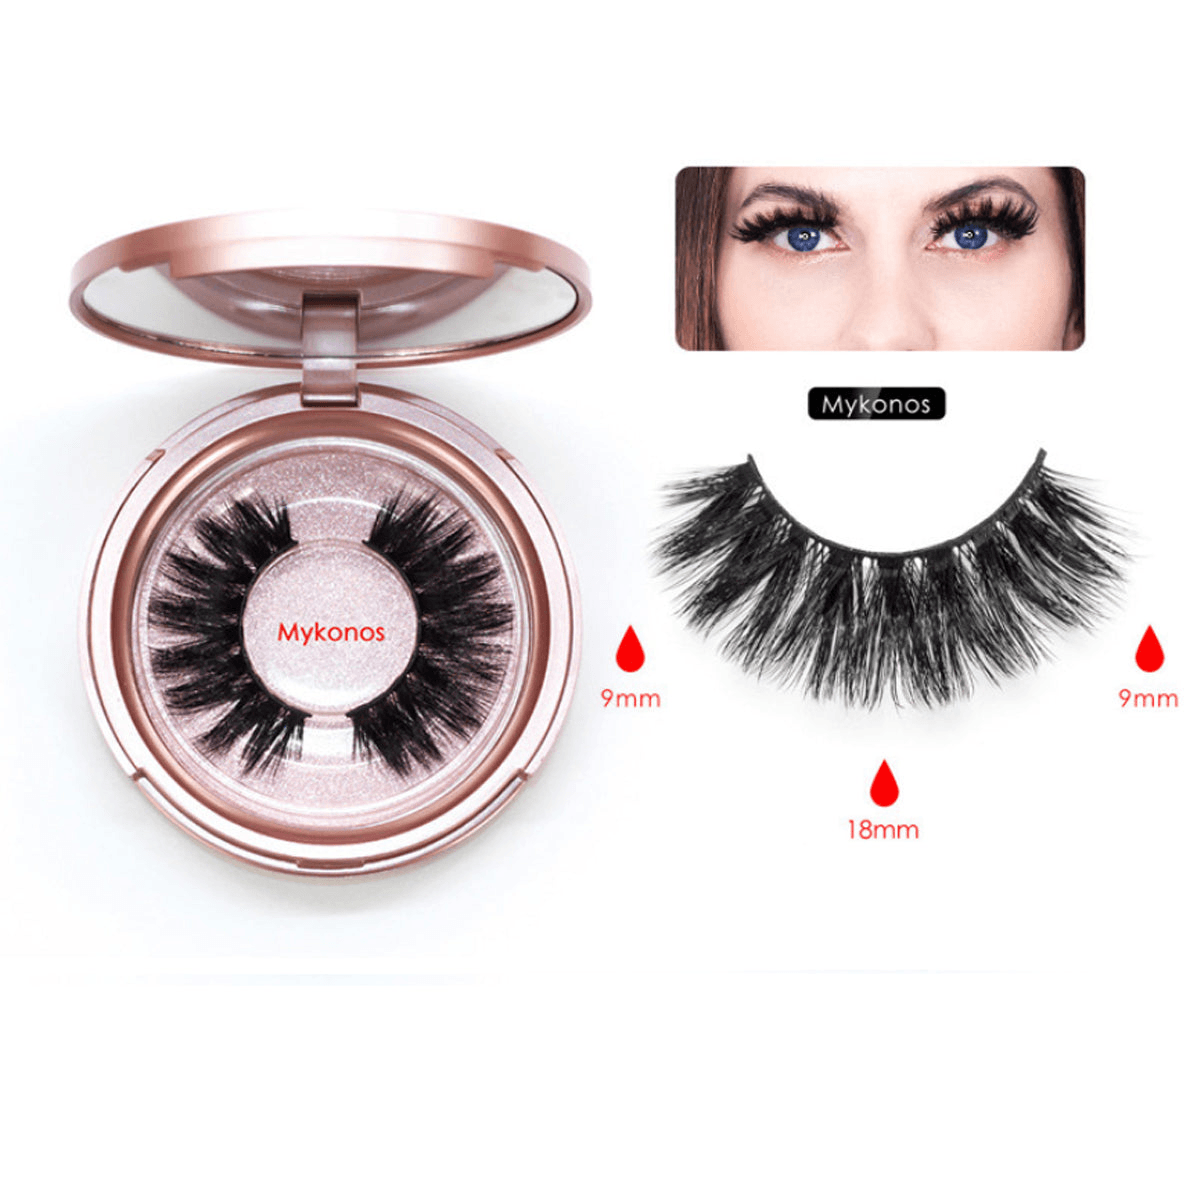 Sweet Eyes Magnetic Eyeliner And Eyelashes Kit - Glam Cosmos